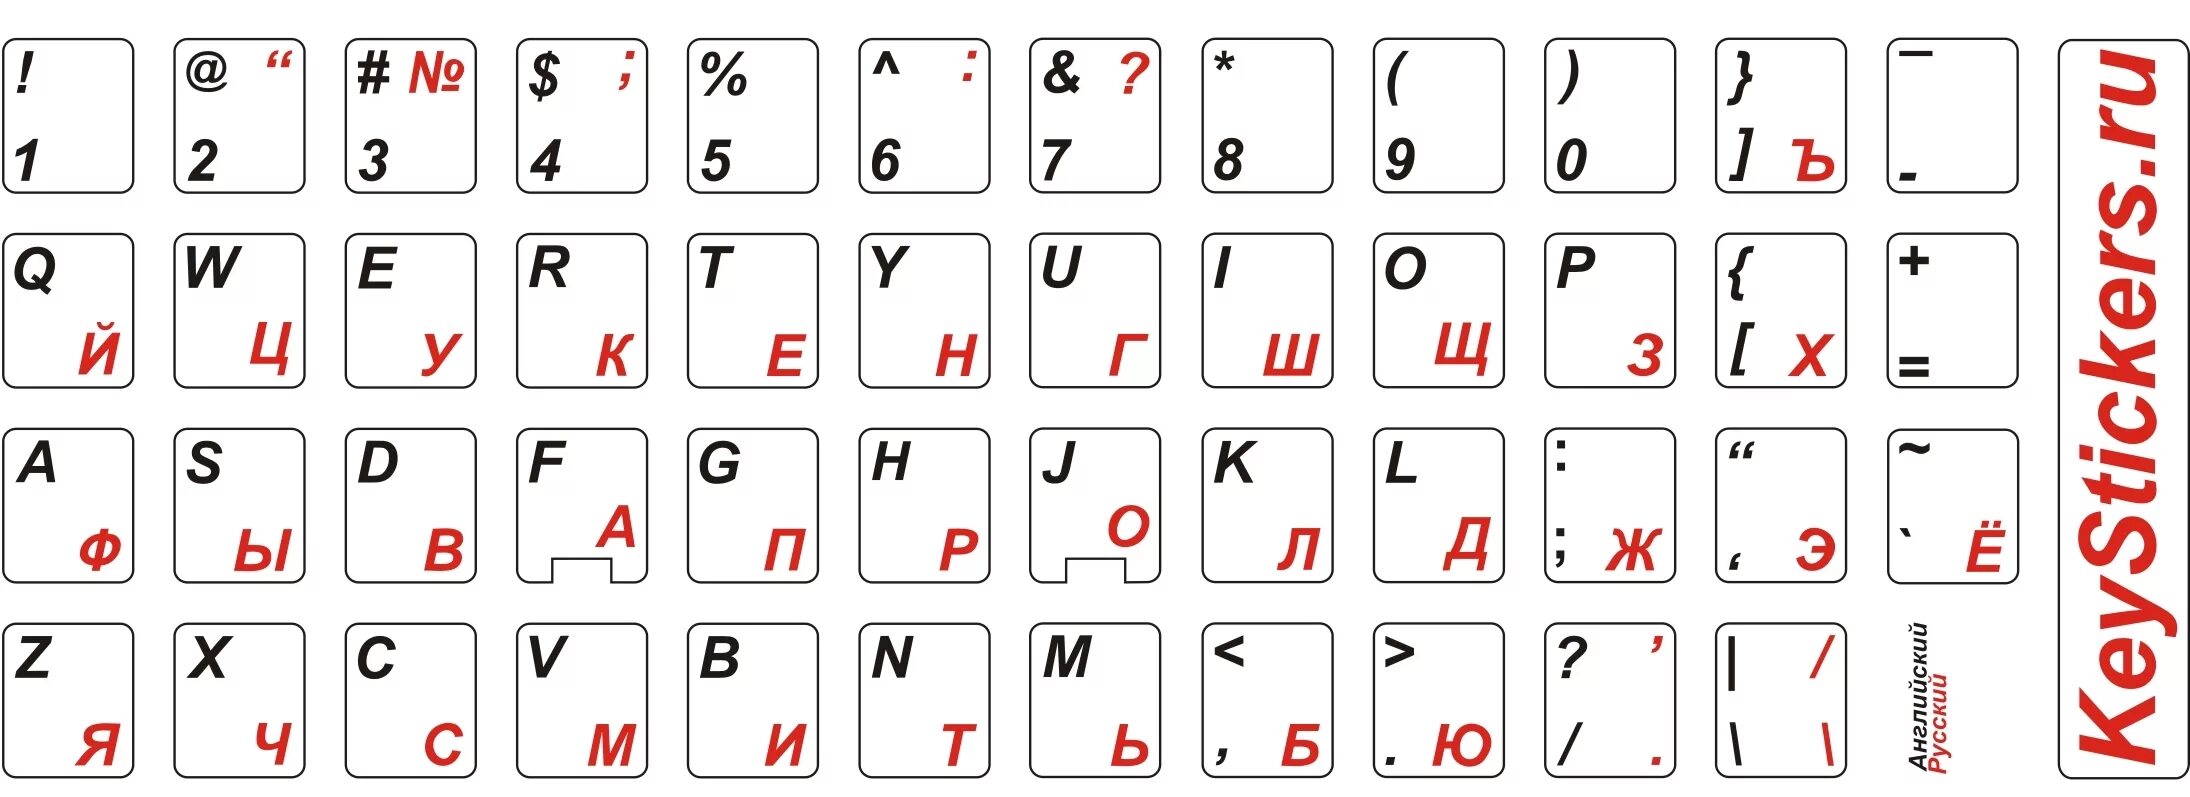 Русские буквы на клавиатуру. Наклейки на клавиатуру распечатка. Наклейки буквы на клавиатуру. Наклейки на клавиатуру русские буквы.